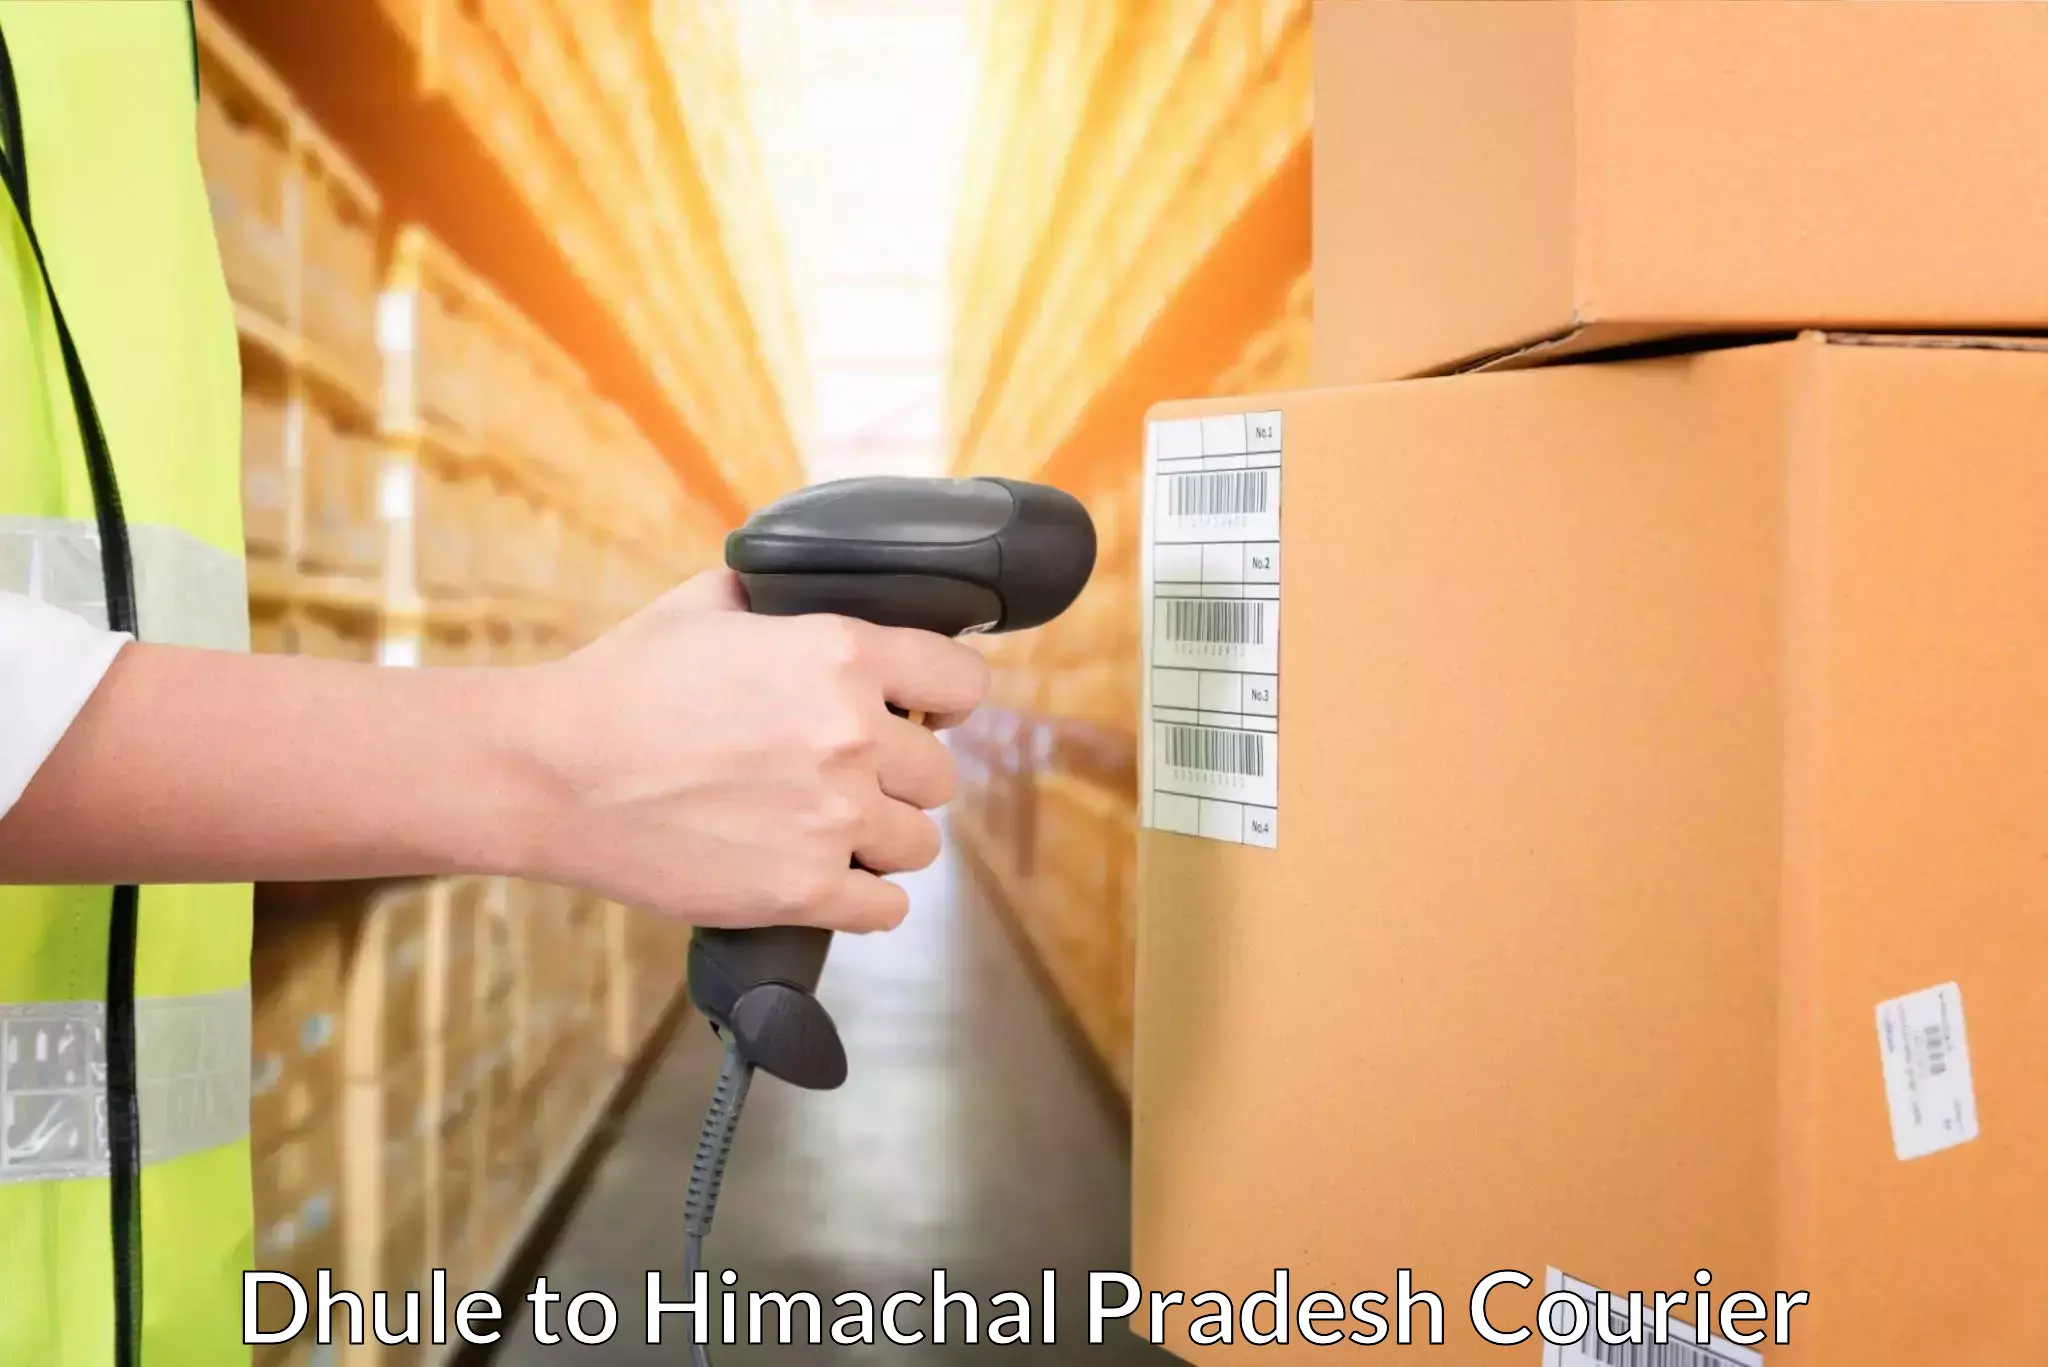 Door-to-door freight service Dhule to Himachal Pradesh